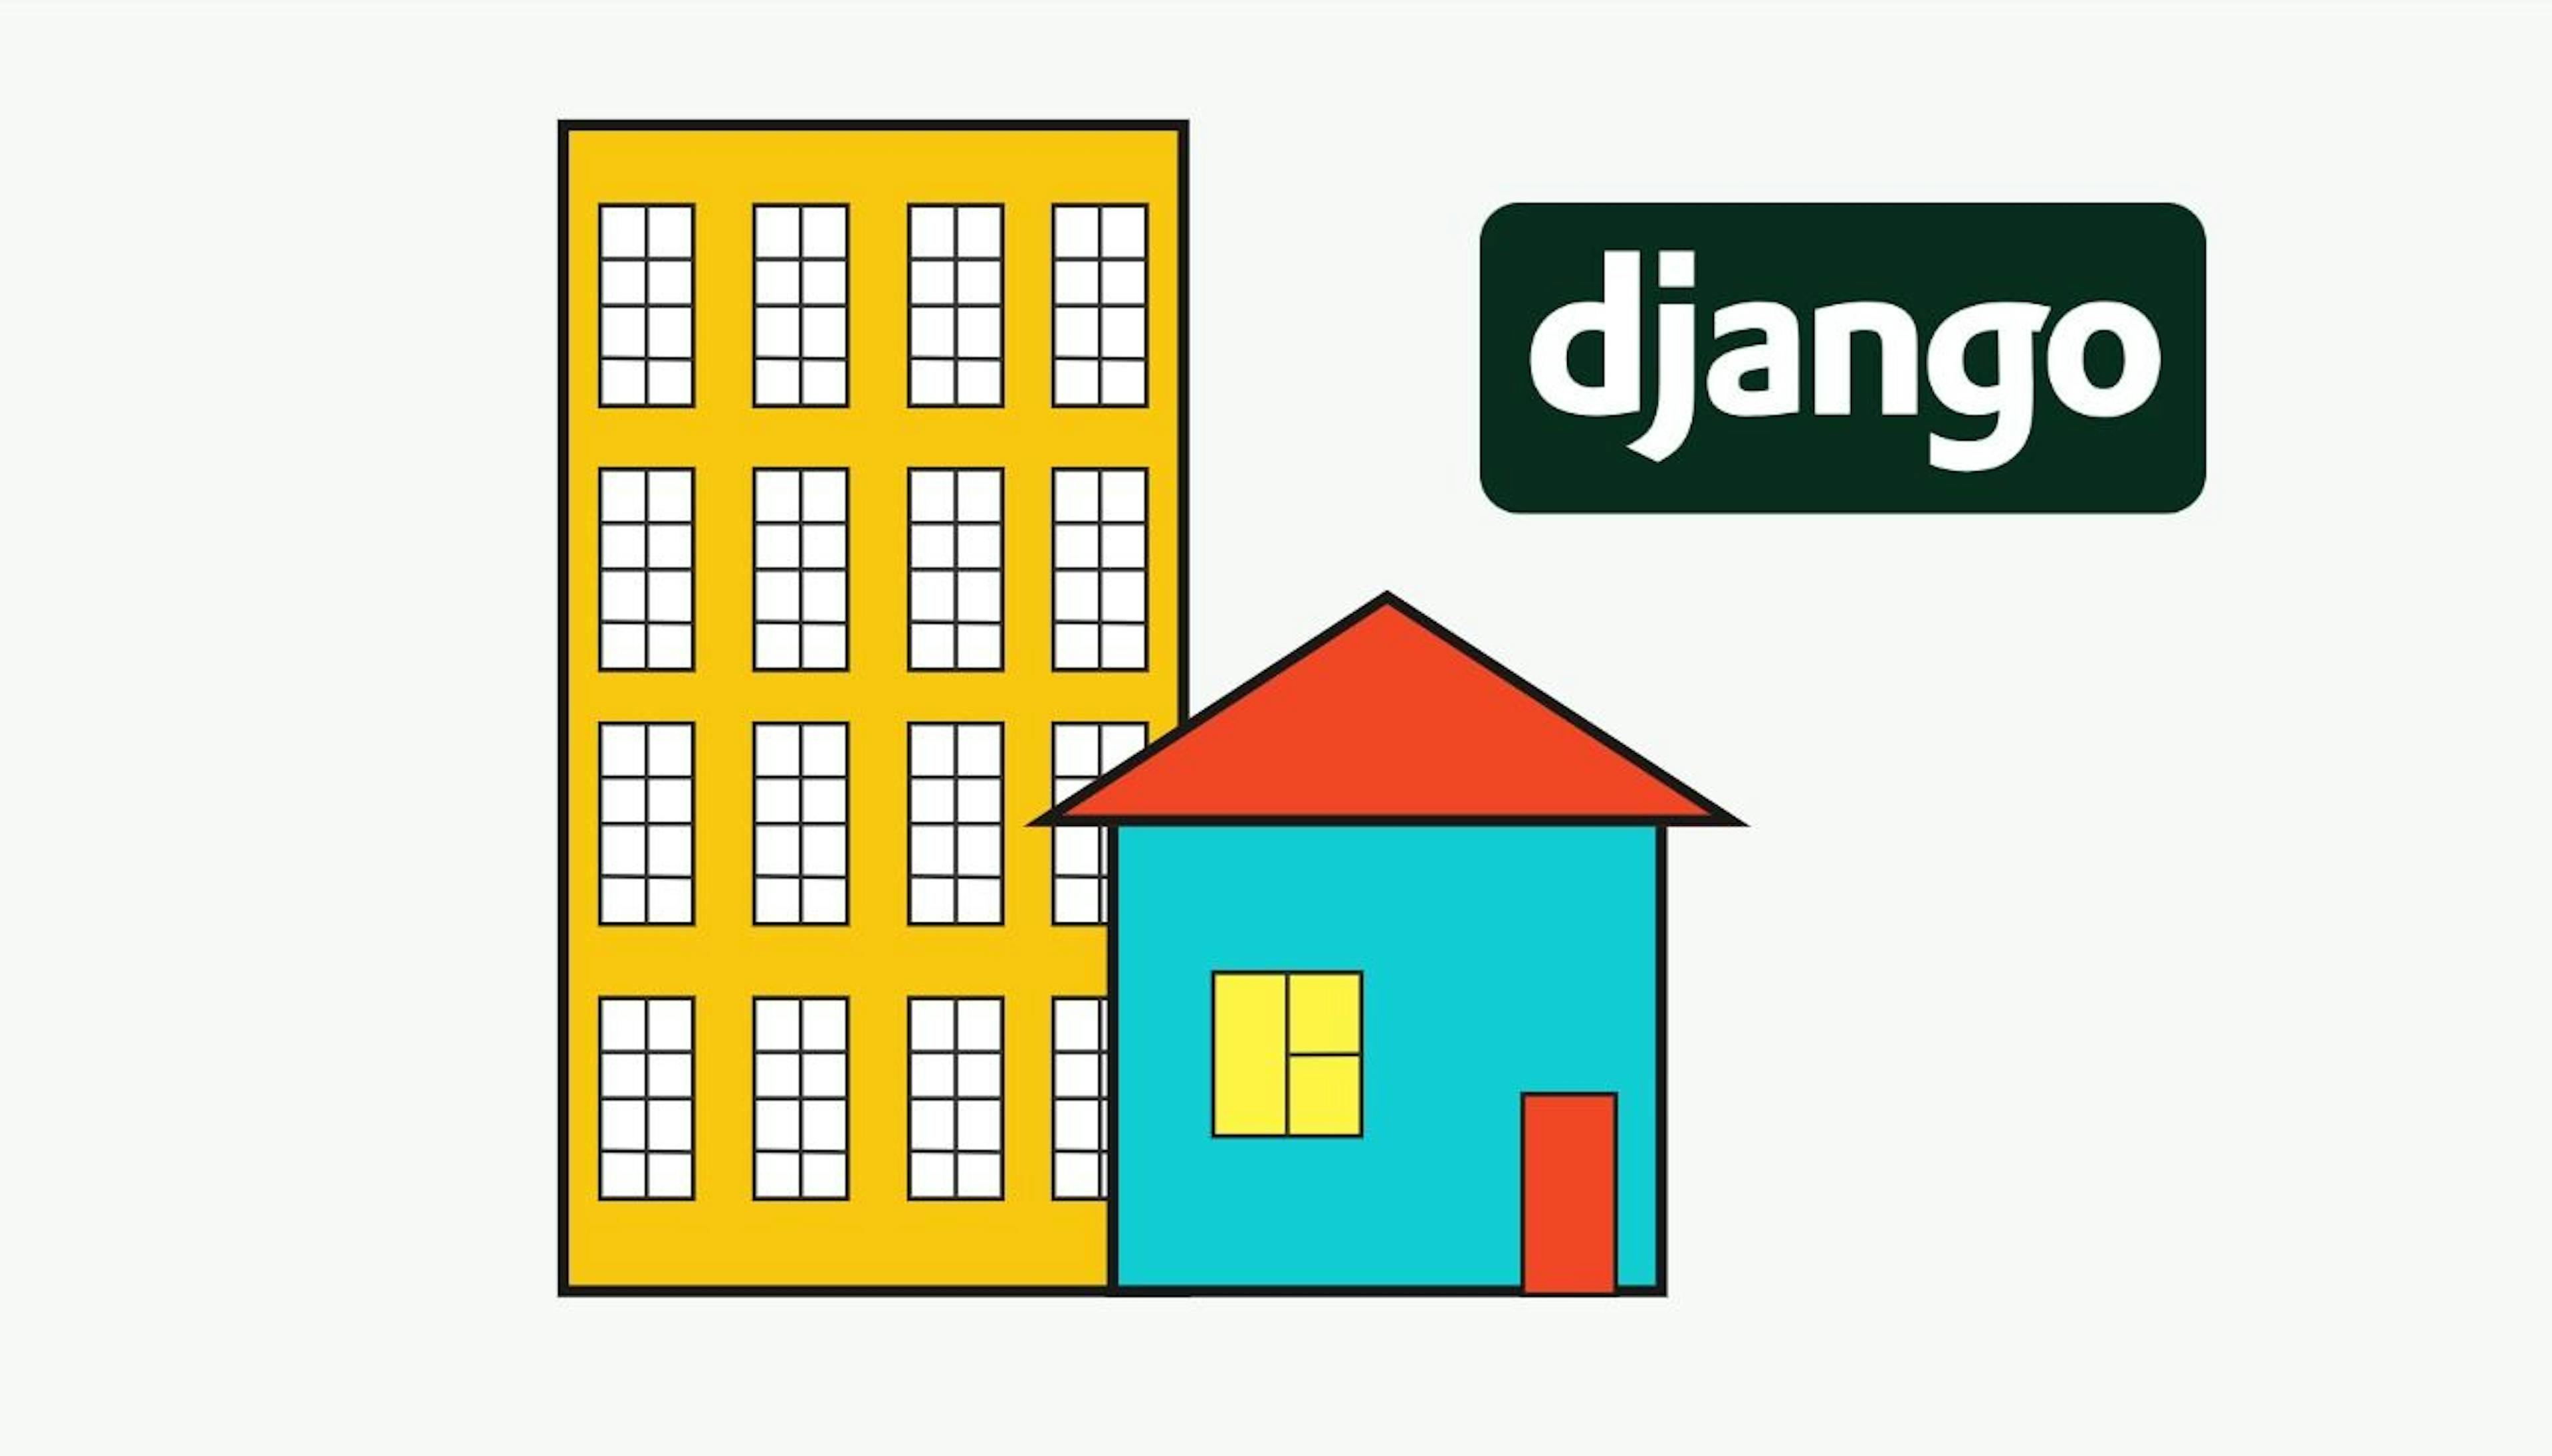 featured image - Kiến trúc Django SaaS: Một người thuê và Nhiều người thuê - Cái nào phù hợp với bạn?